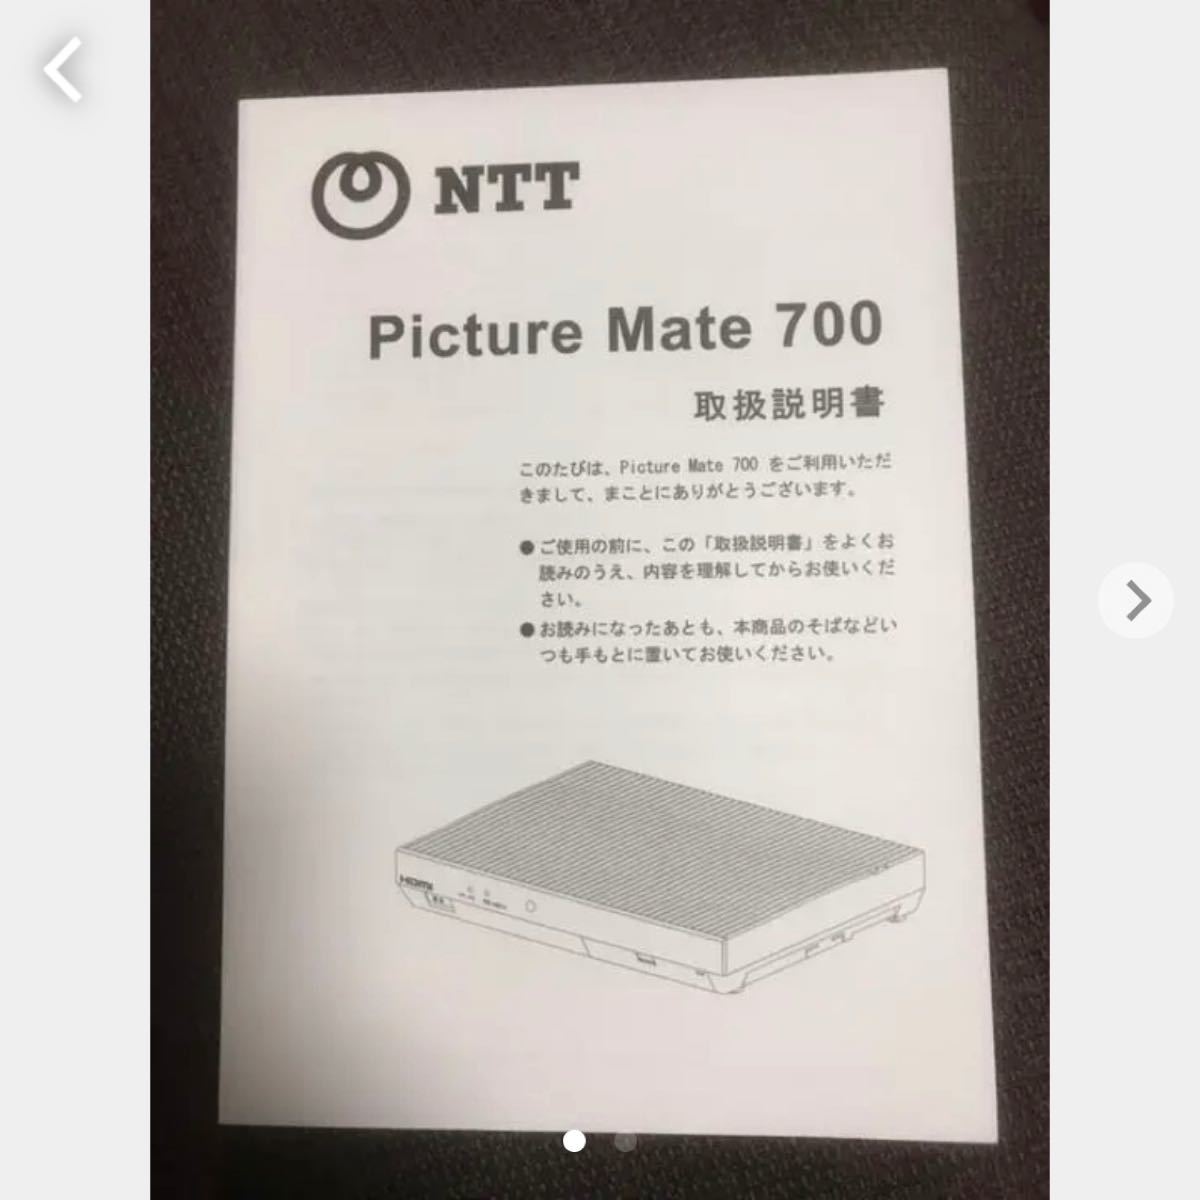 ひかりTVチューナーPicture Mate700用取扱説明書